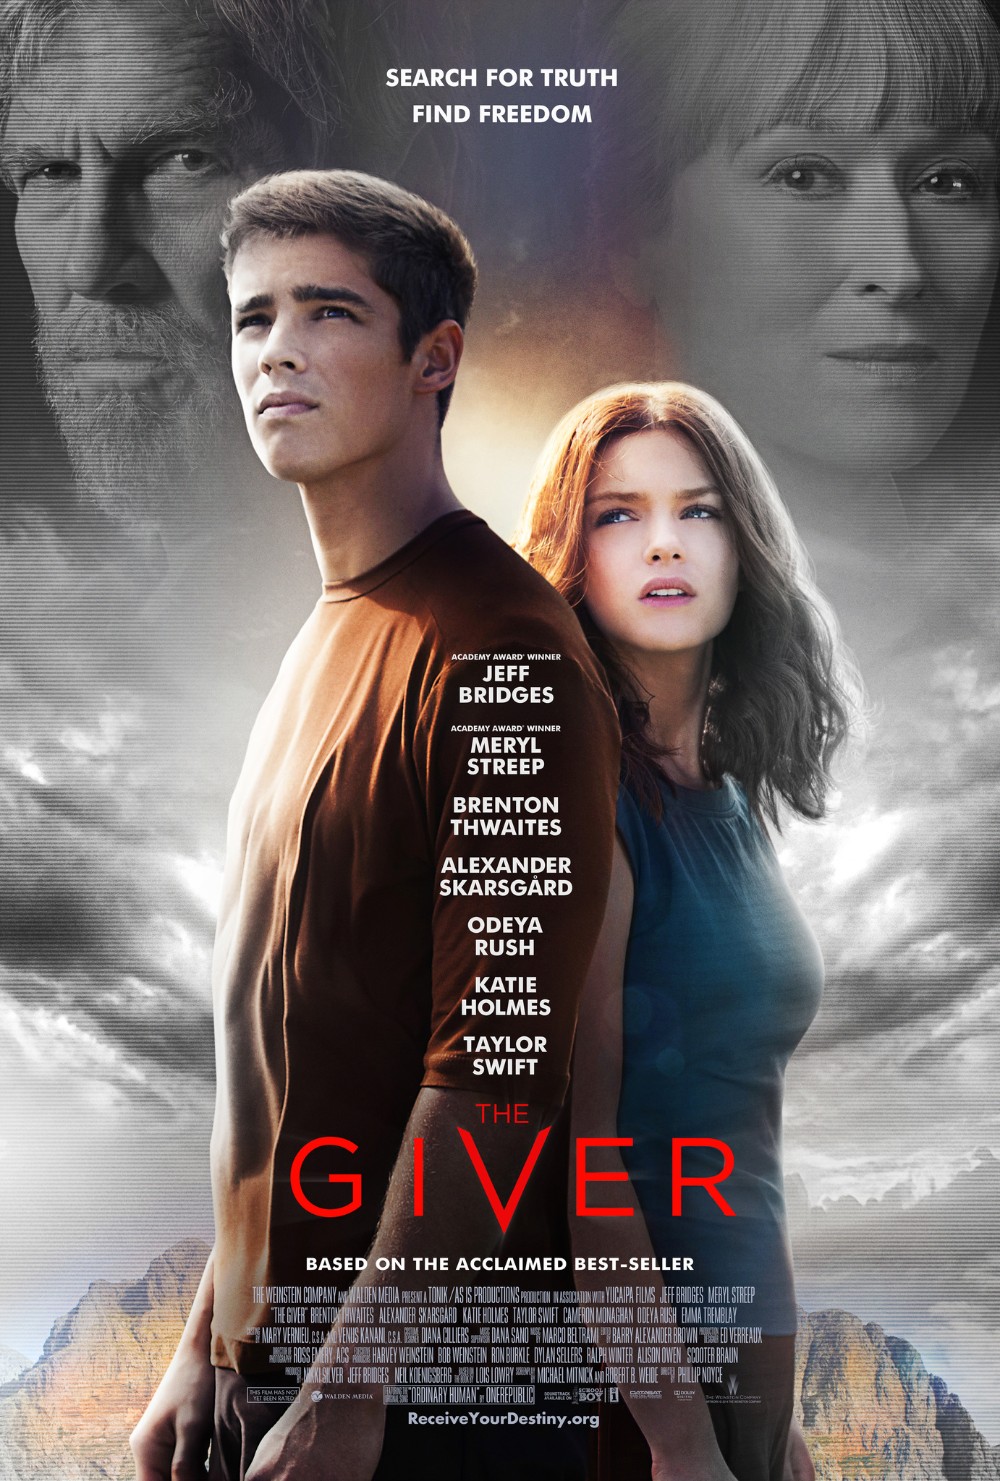 The Giver 2014 [720p] WEBRip (x264) 135aec065698b178e47f6407fe43f566